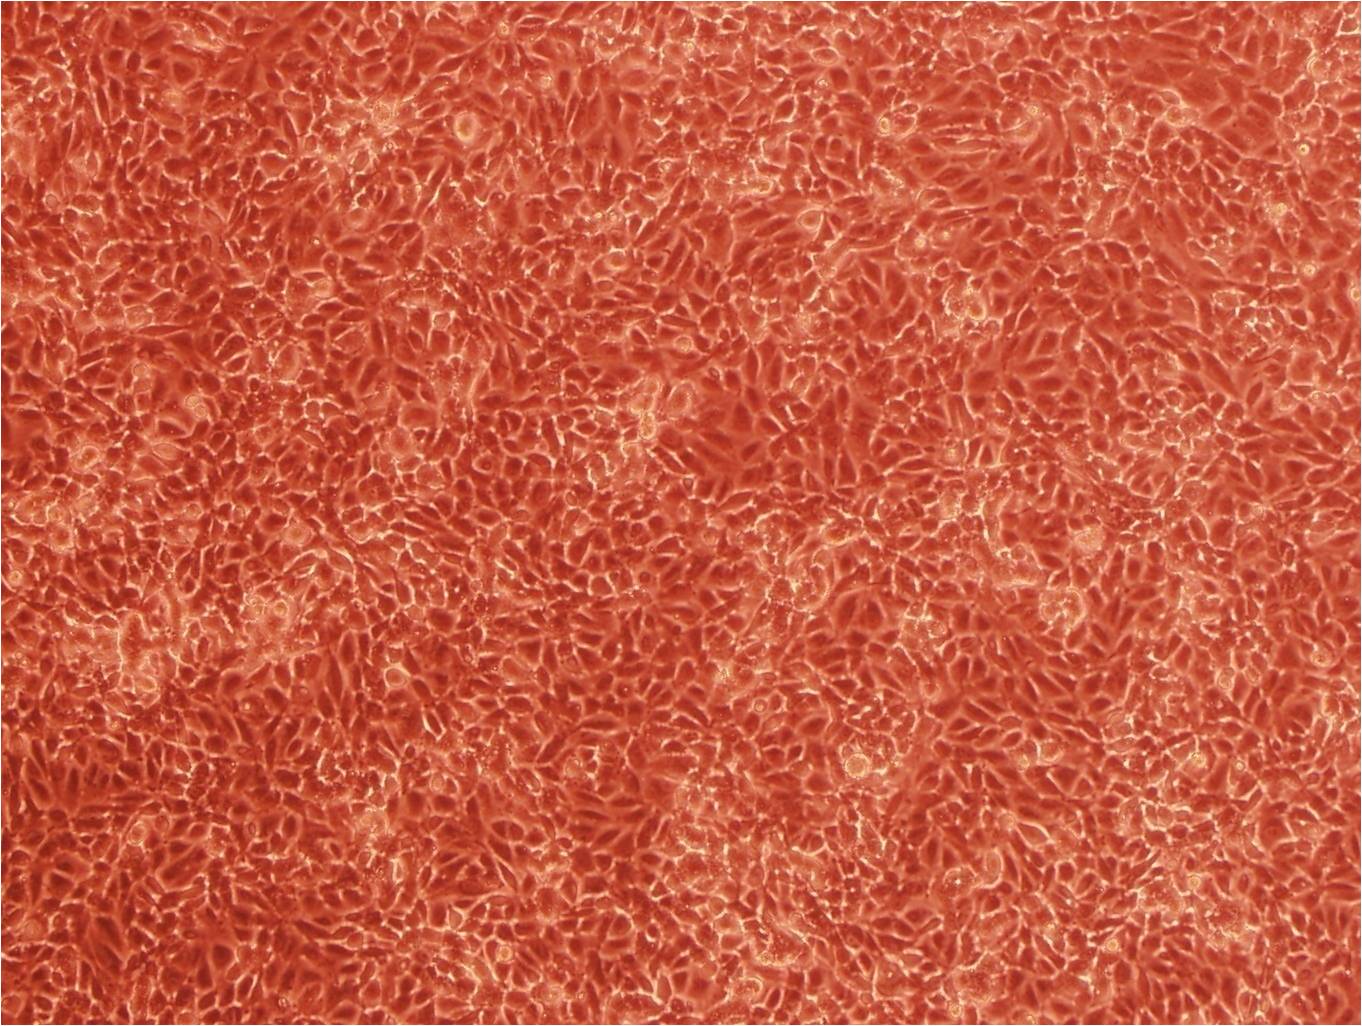 GL261 Cell|小鼠胶质瘤细胞